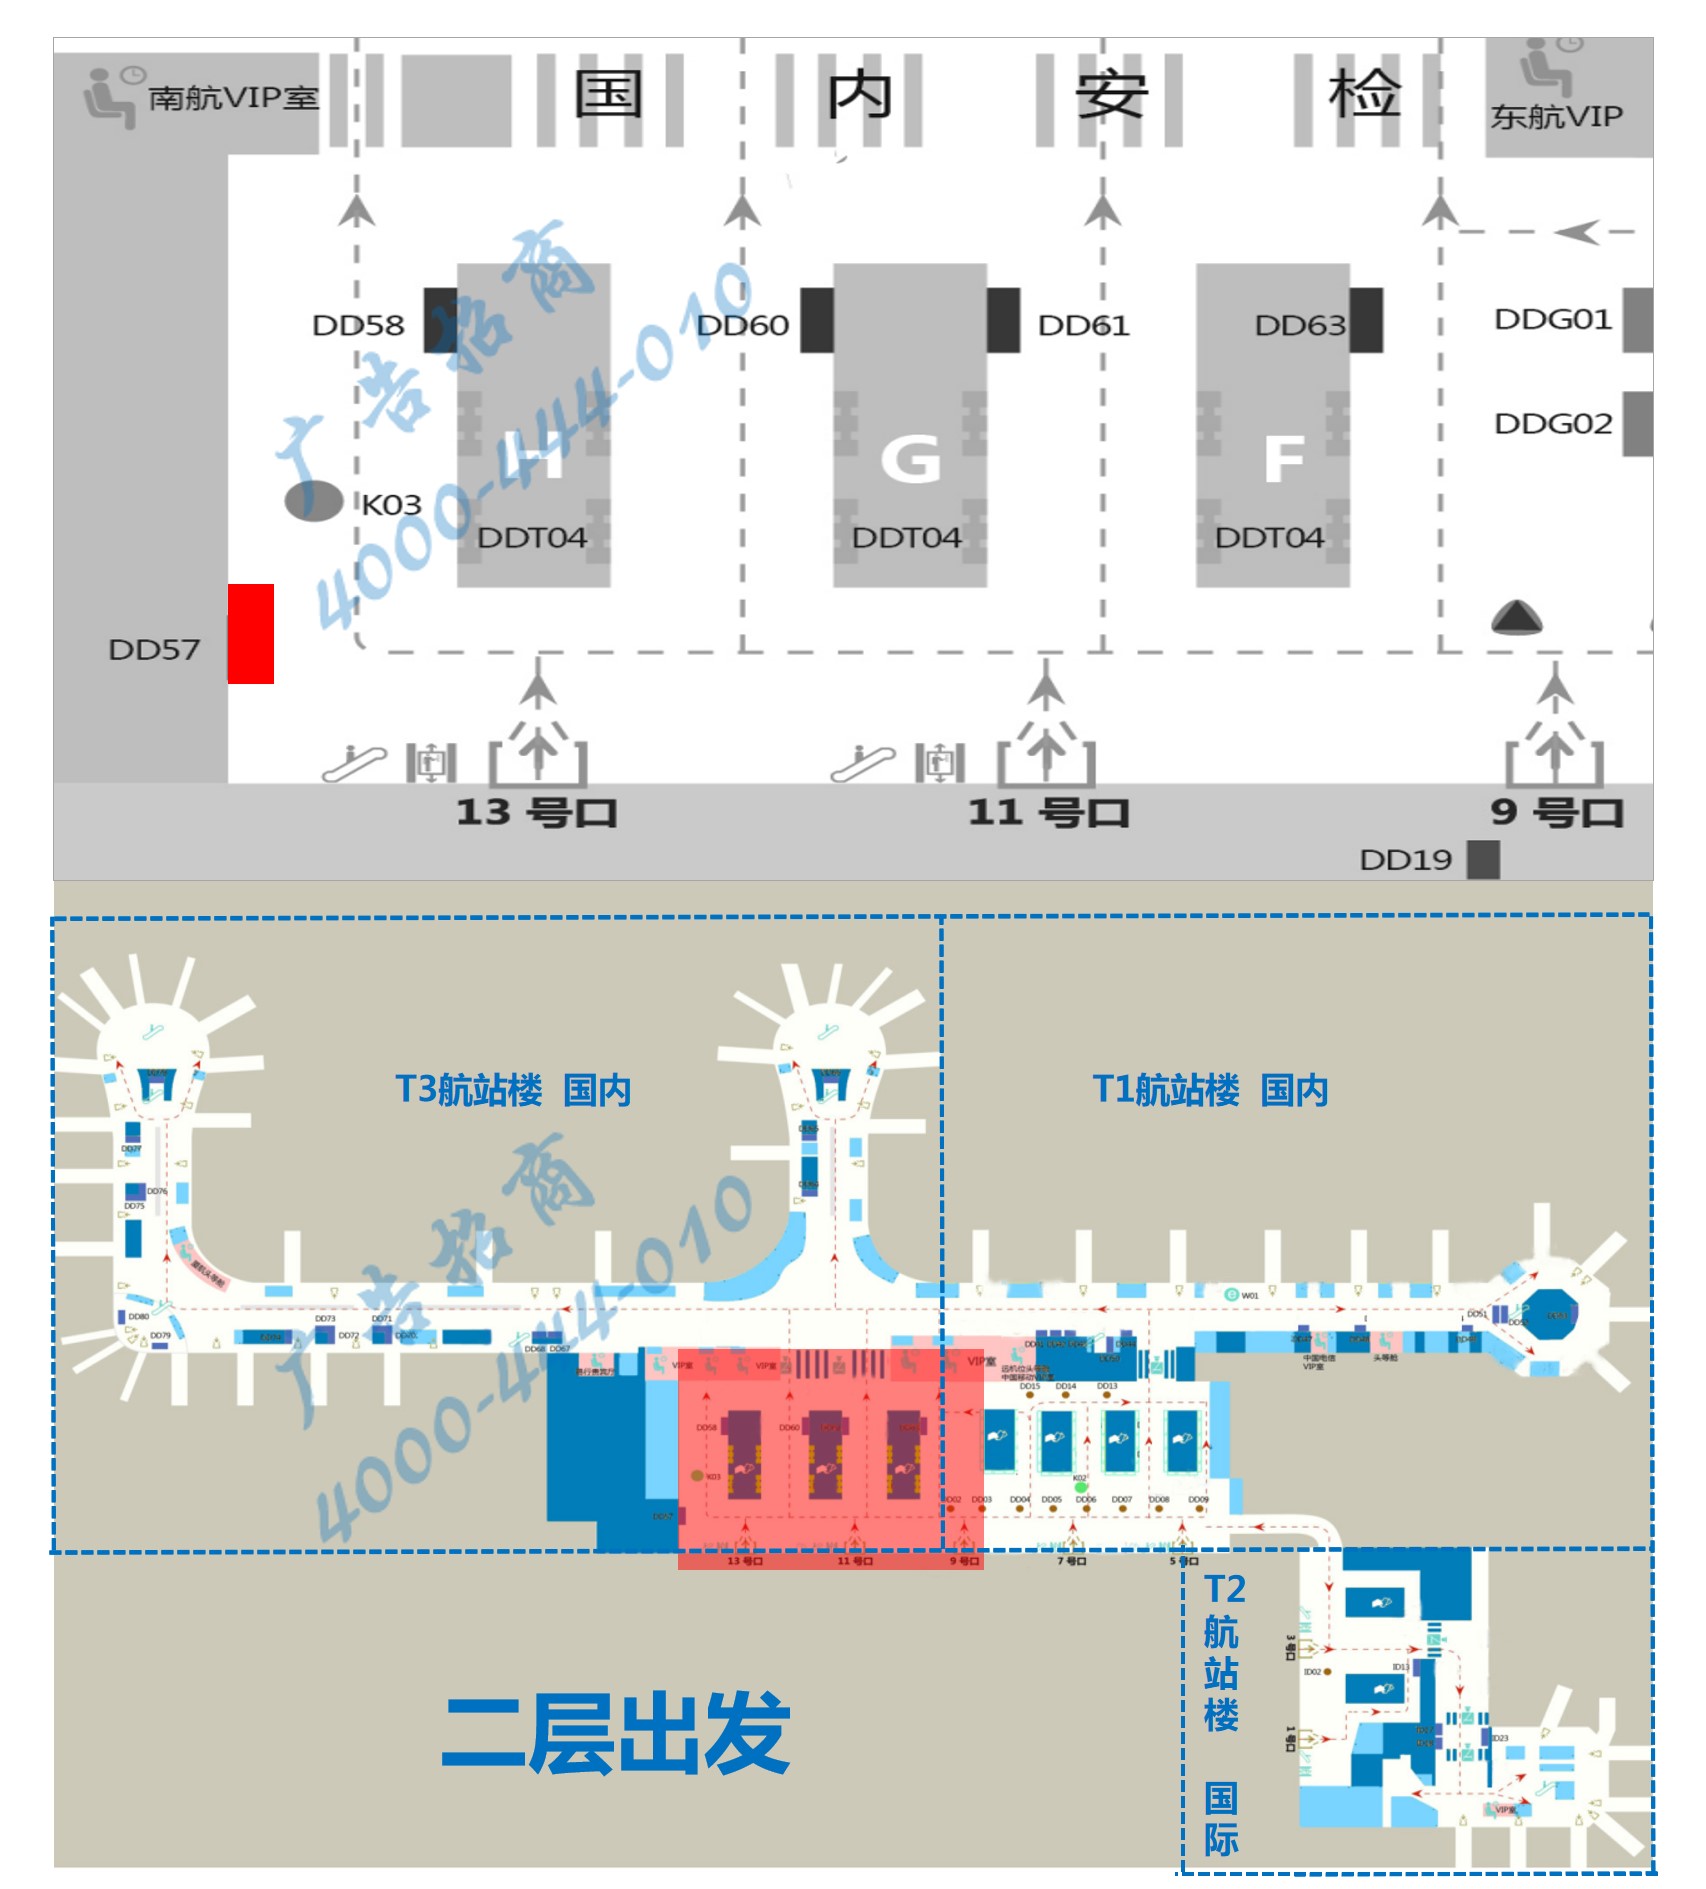 杭州萧山机场广告-T3出发大厅灯箱DD57位置图